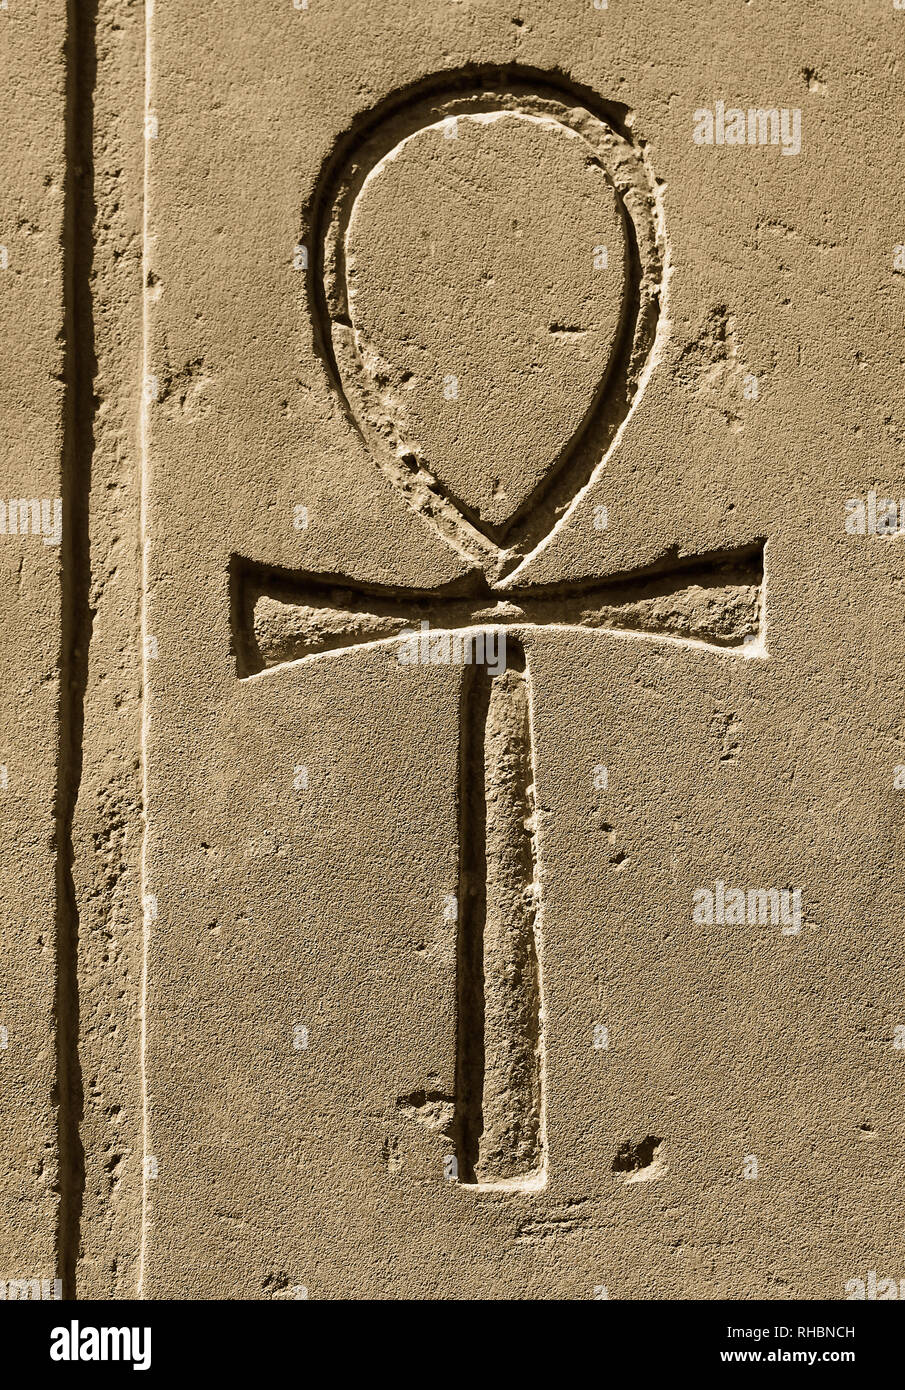 Croce egiziana immagini e fotografie stock ad alta risoluzione - Alamy